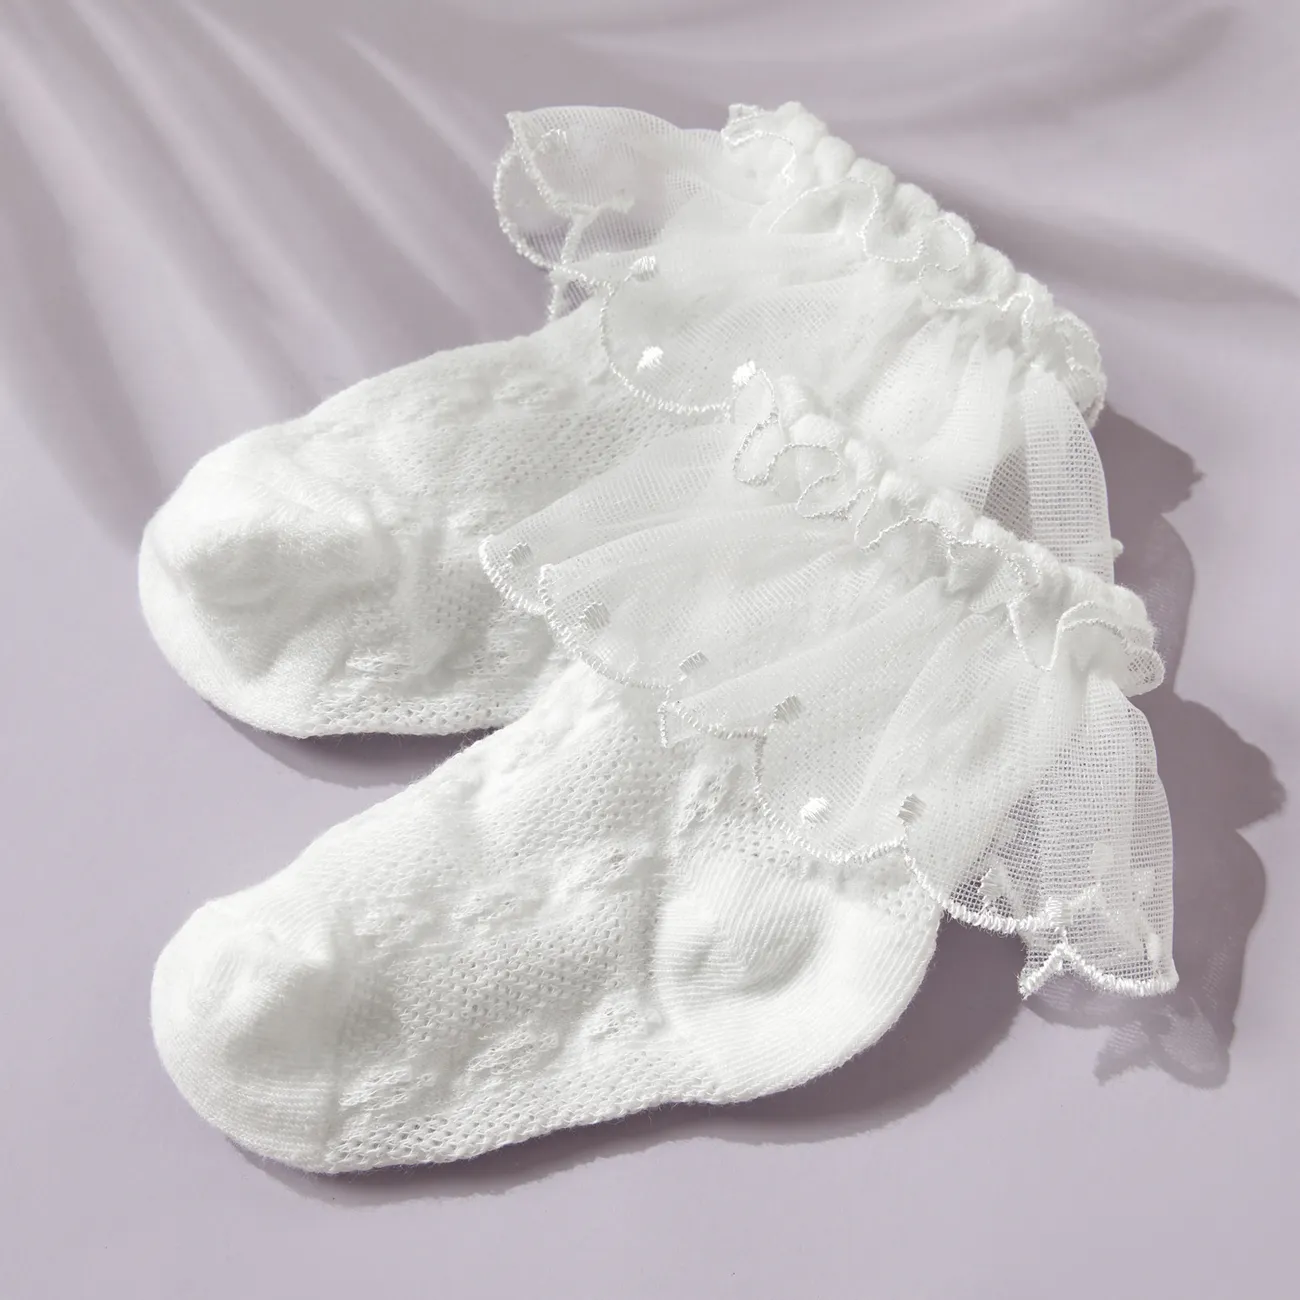 chaussettes respirantes à volants en dentelle solide pour bébé / enfant en bas âge Blanc big image 1